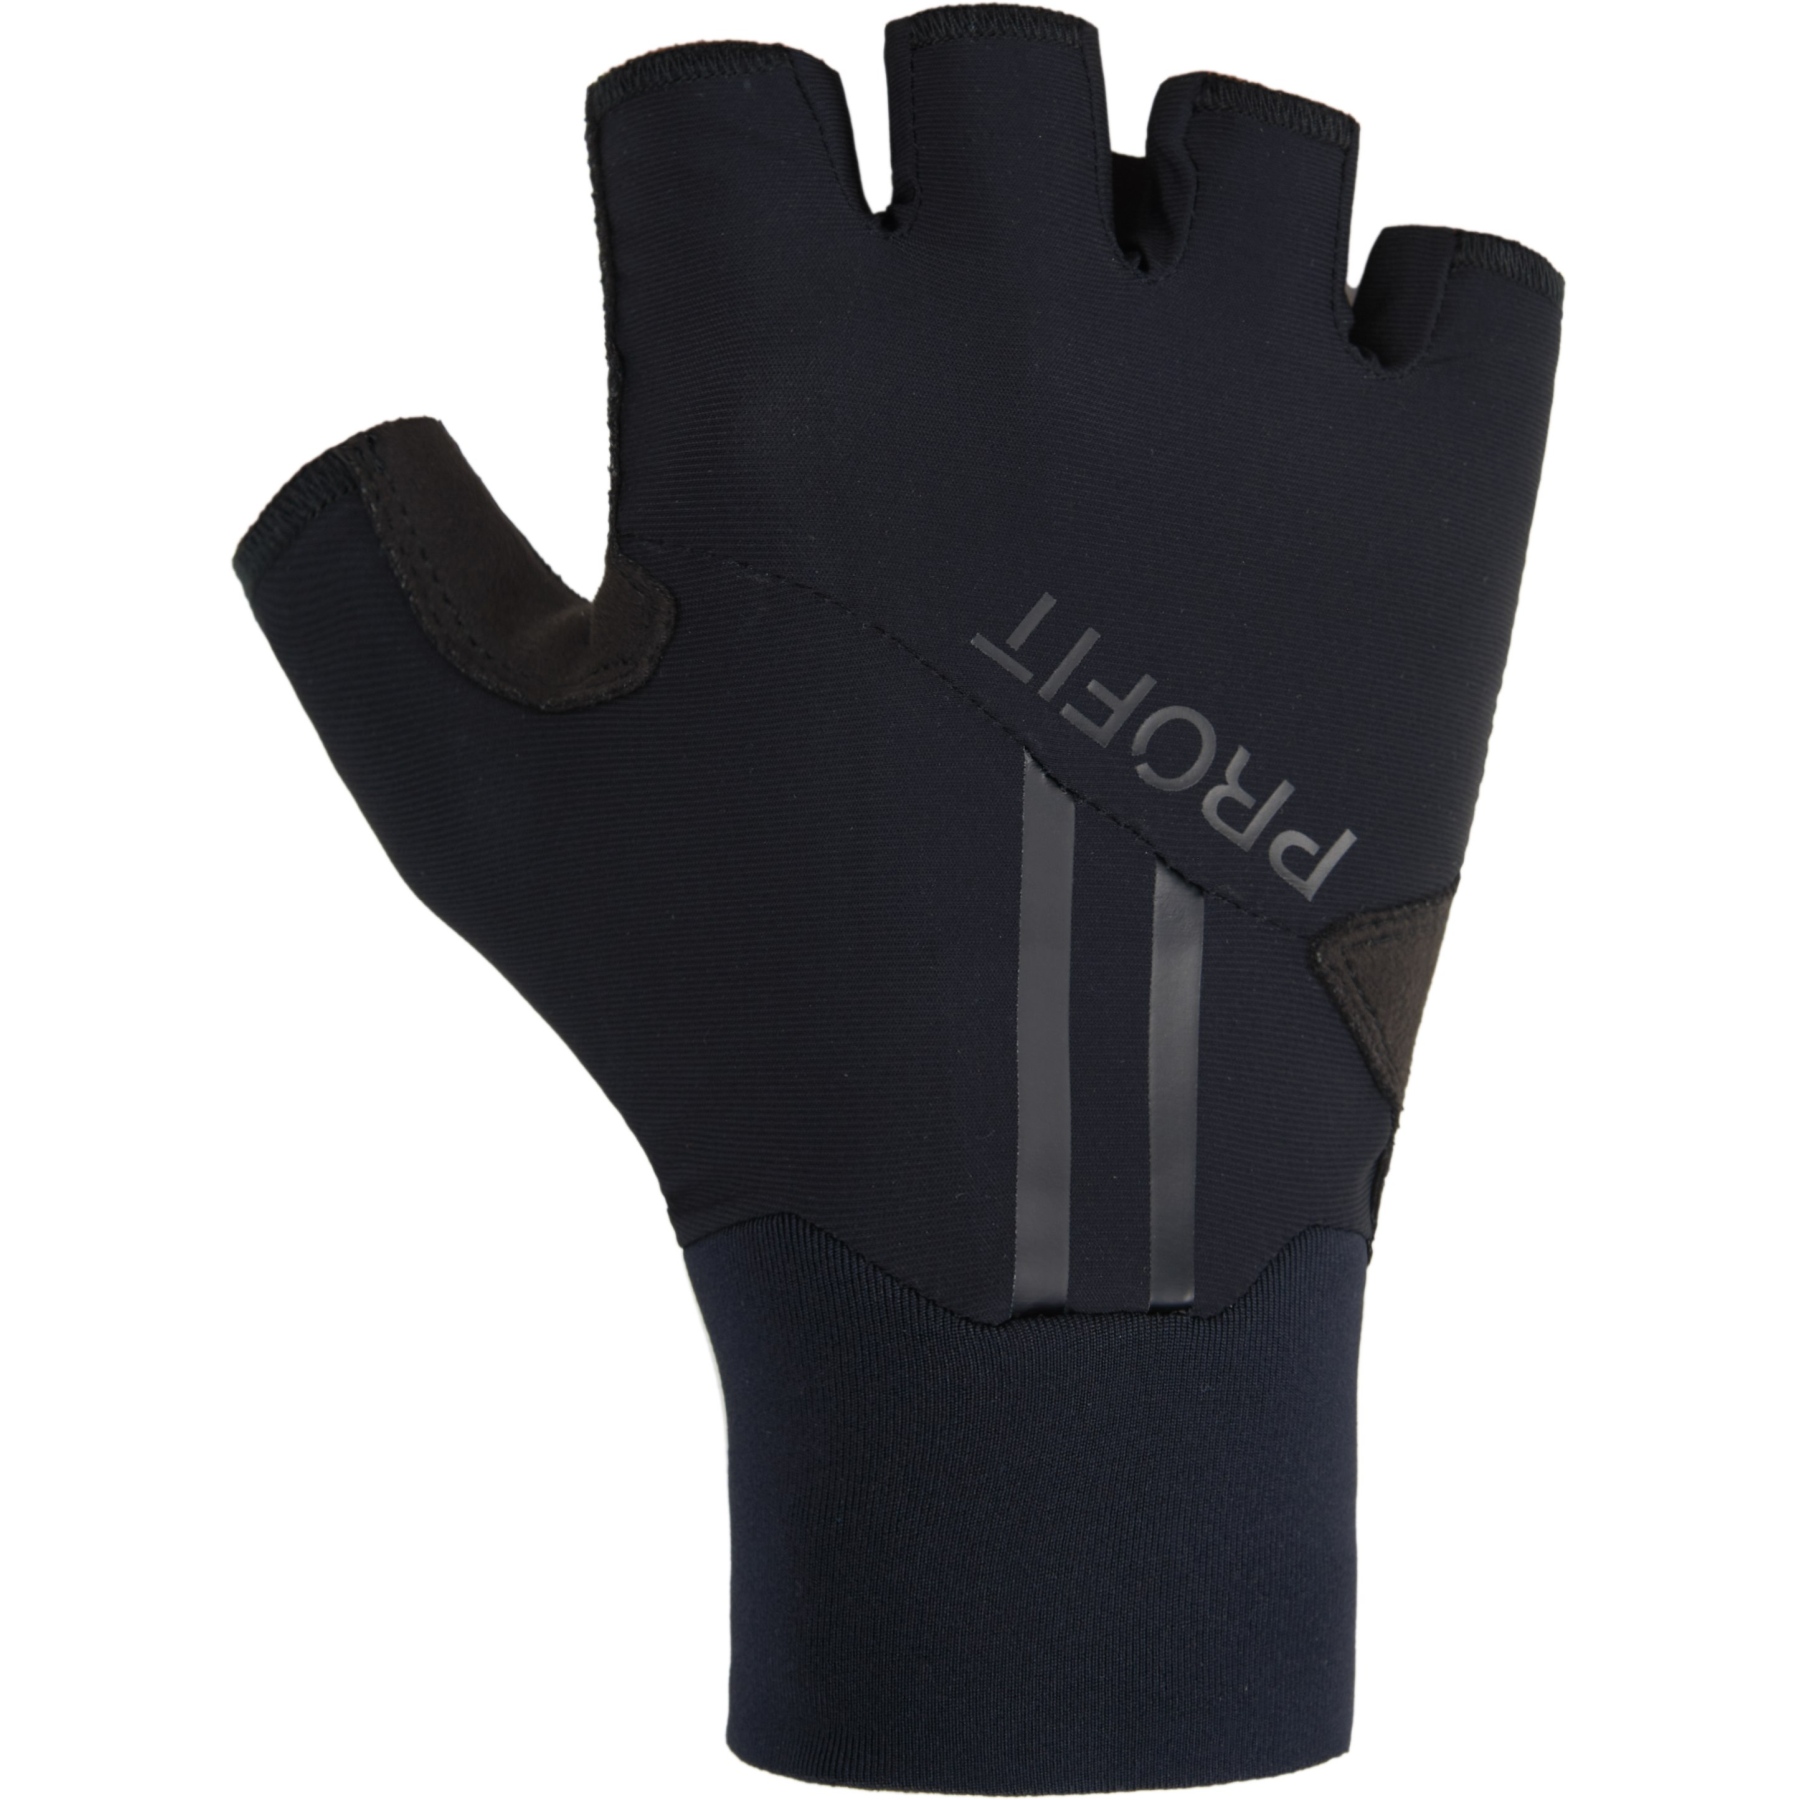 Produktbild von Spiuk PROFIT SUMMER Handschuhe - schwarz